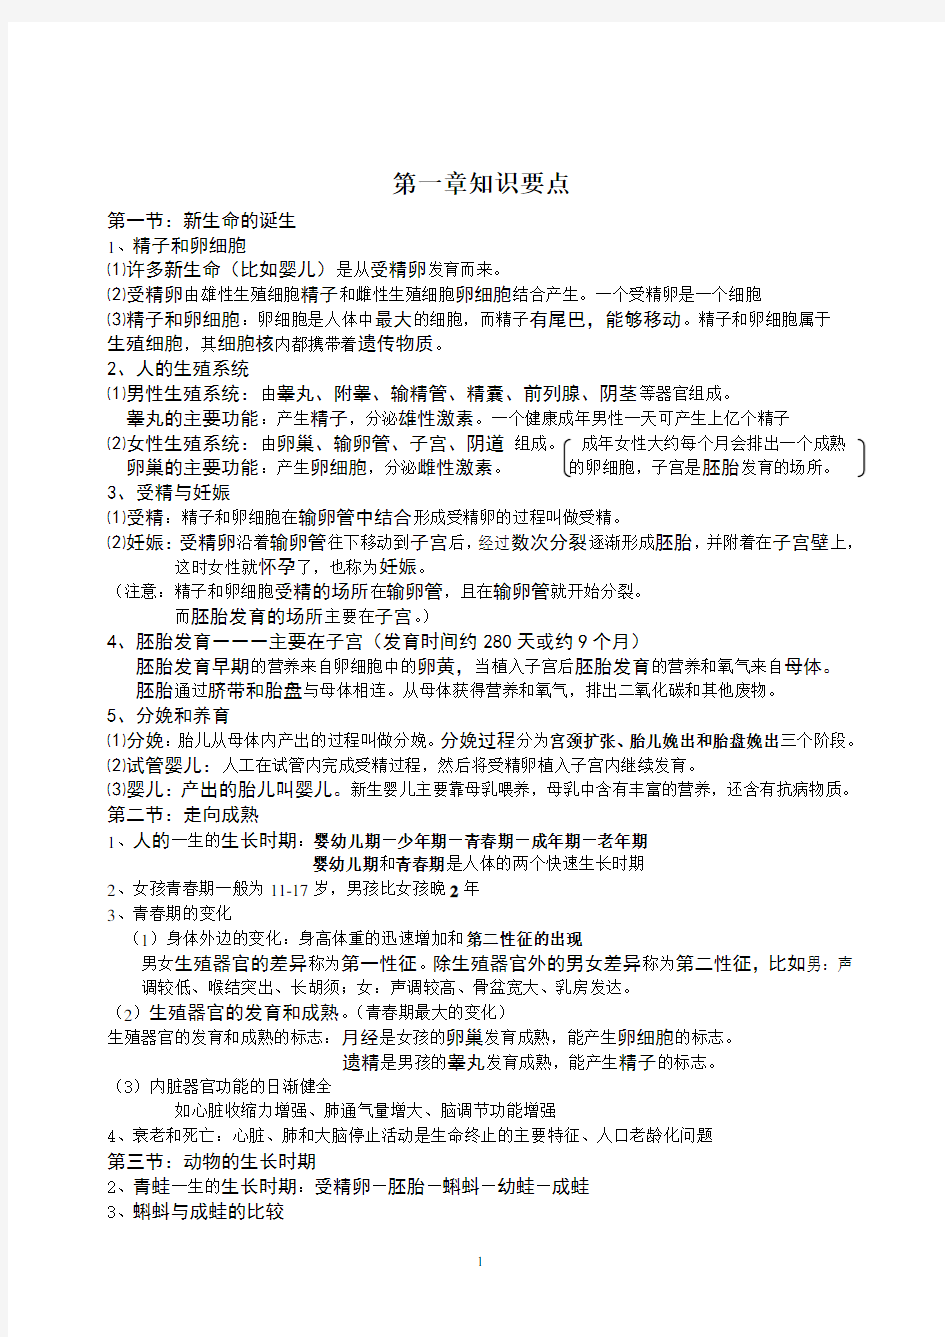 浙教版七年级下册科学知识要点(2020年整理).pdf